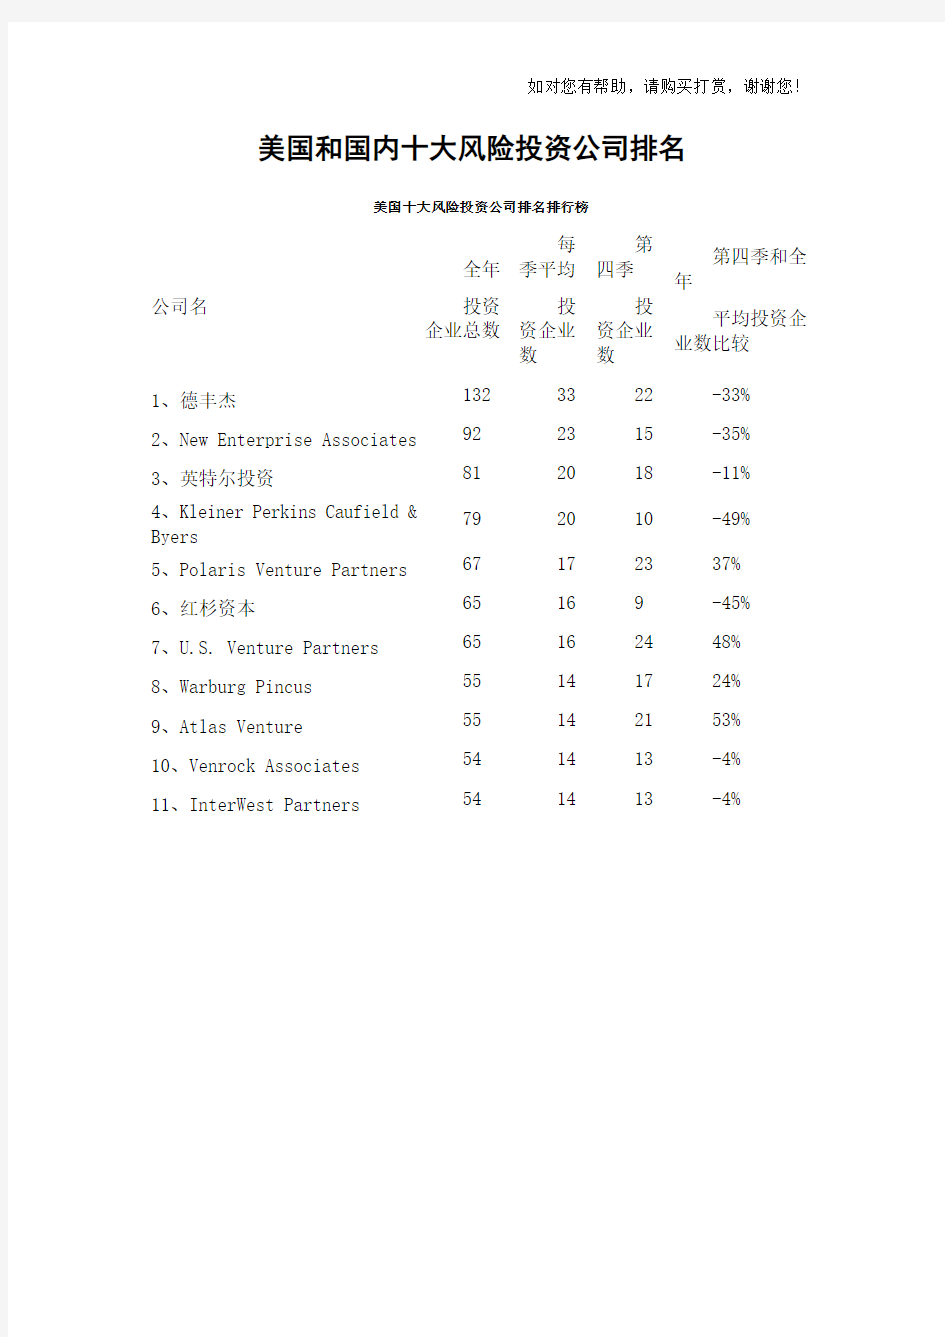 美国和中国十大风险投资公司排名